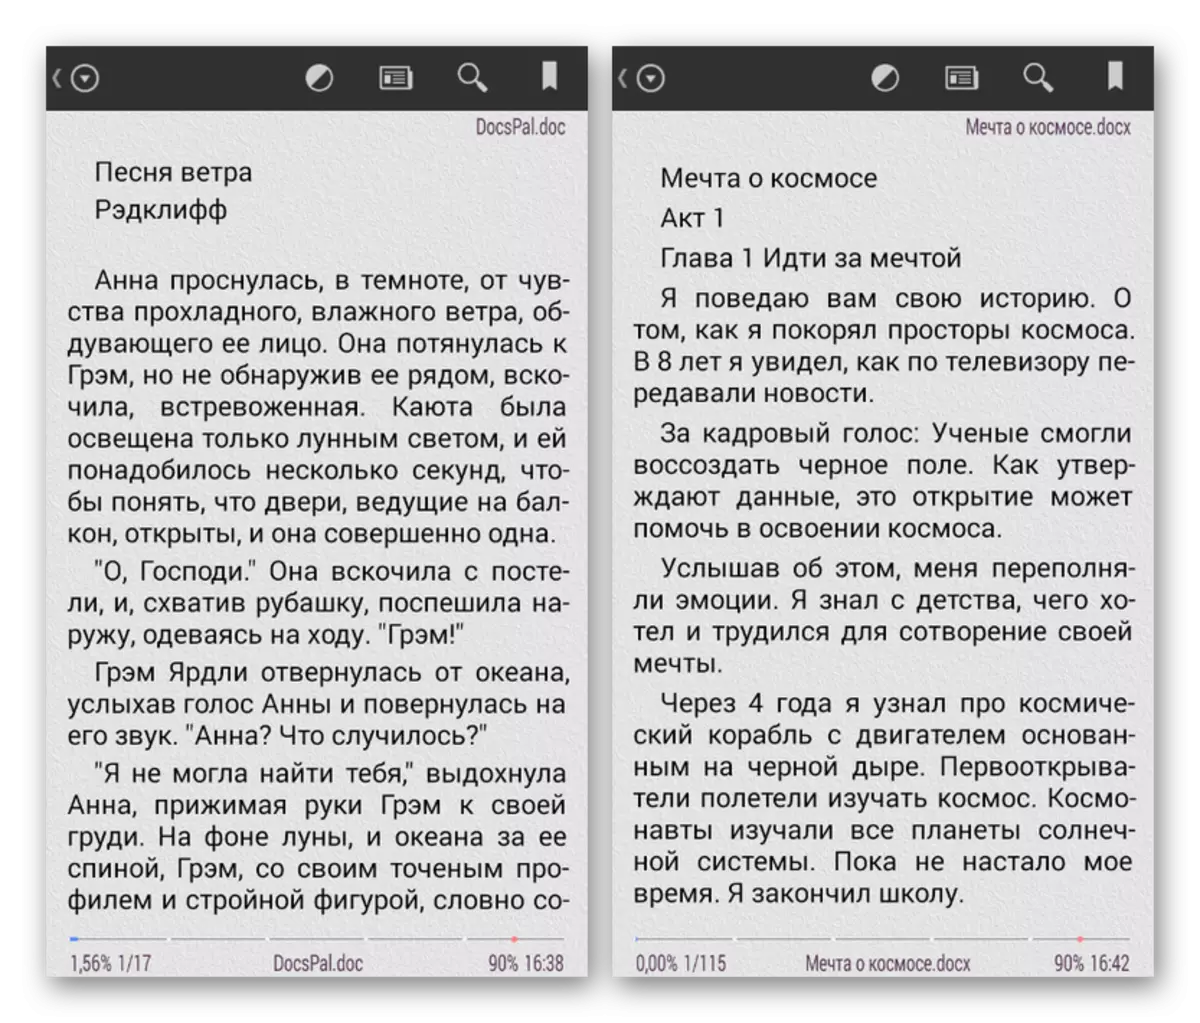 Vzorčne knjige v formatu DOC in DOCX na Androidu